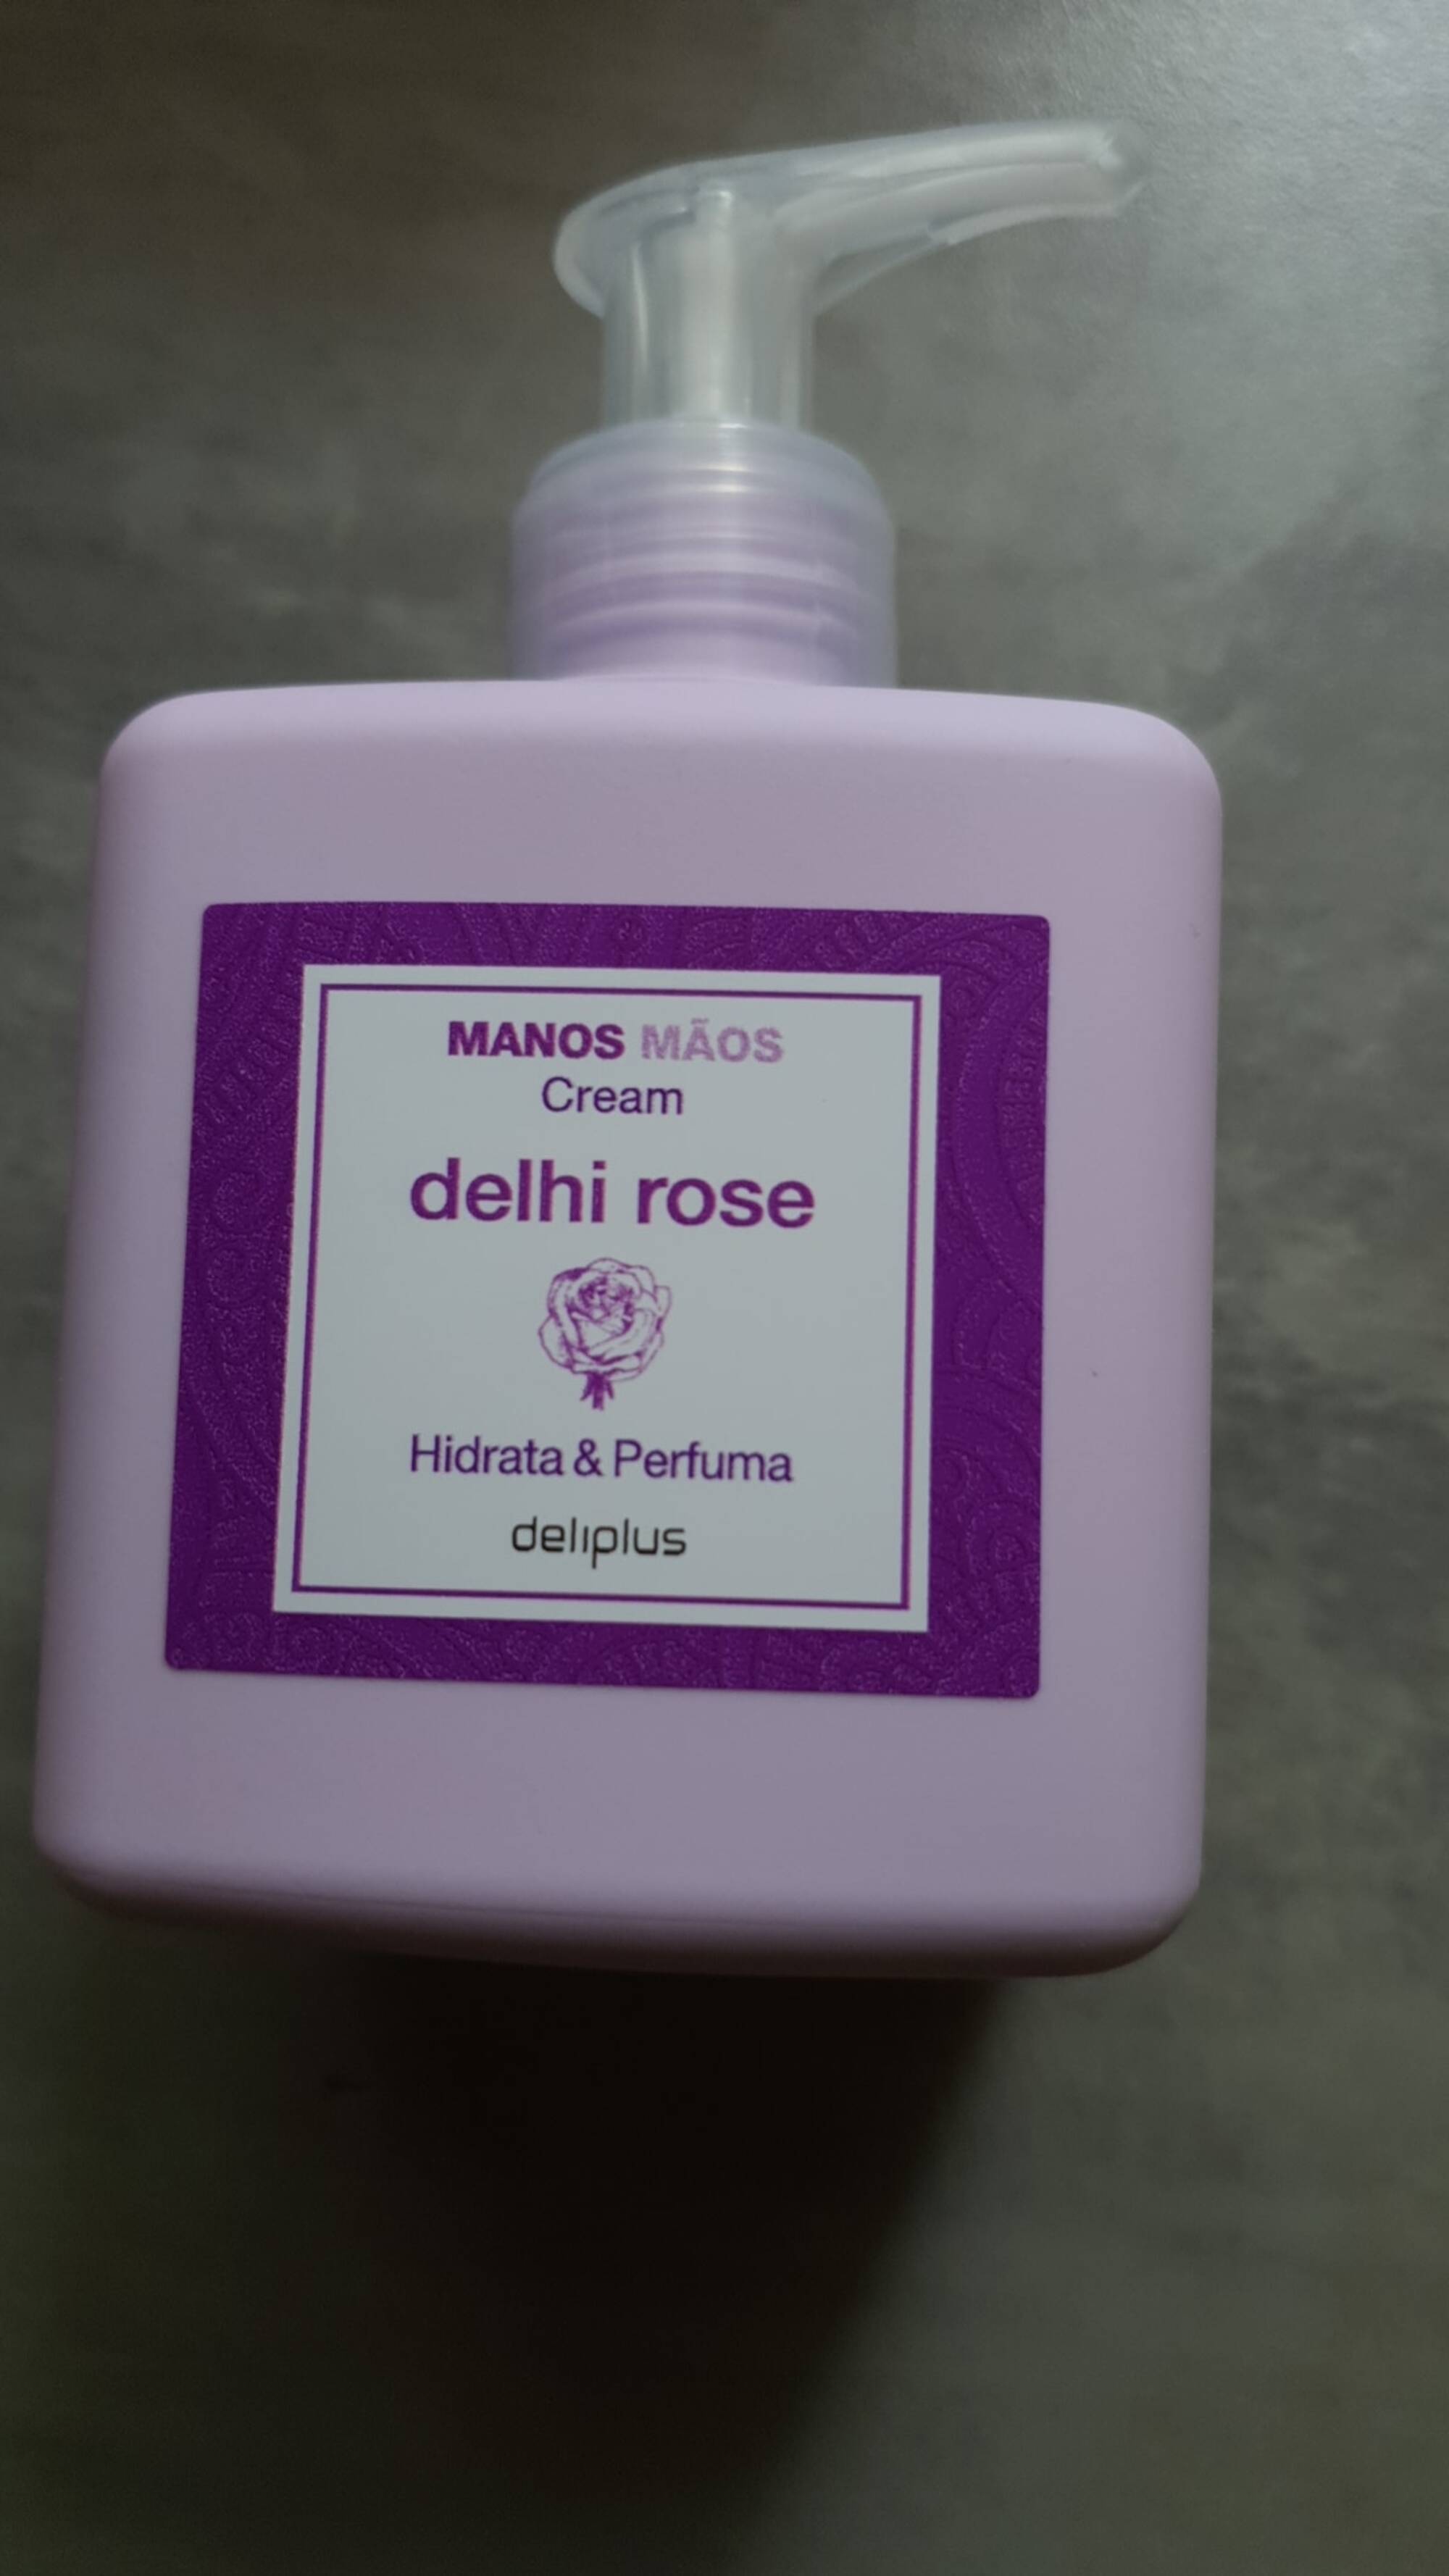 DELIPLUS - Manos Mãos  - Cream delhi rose